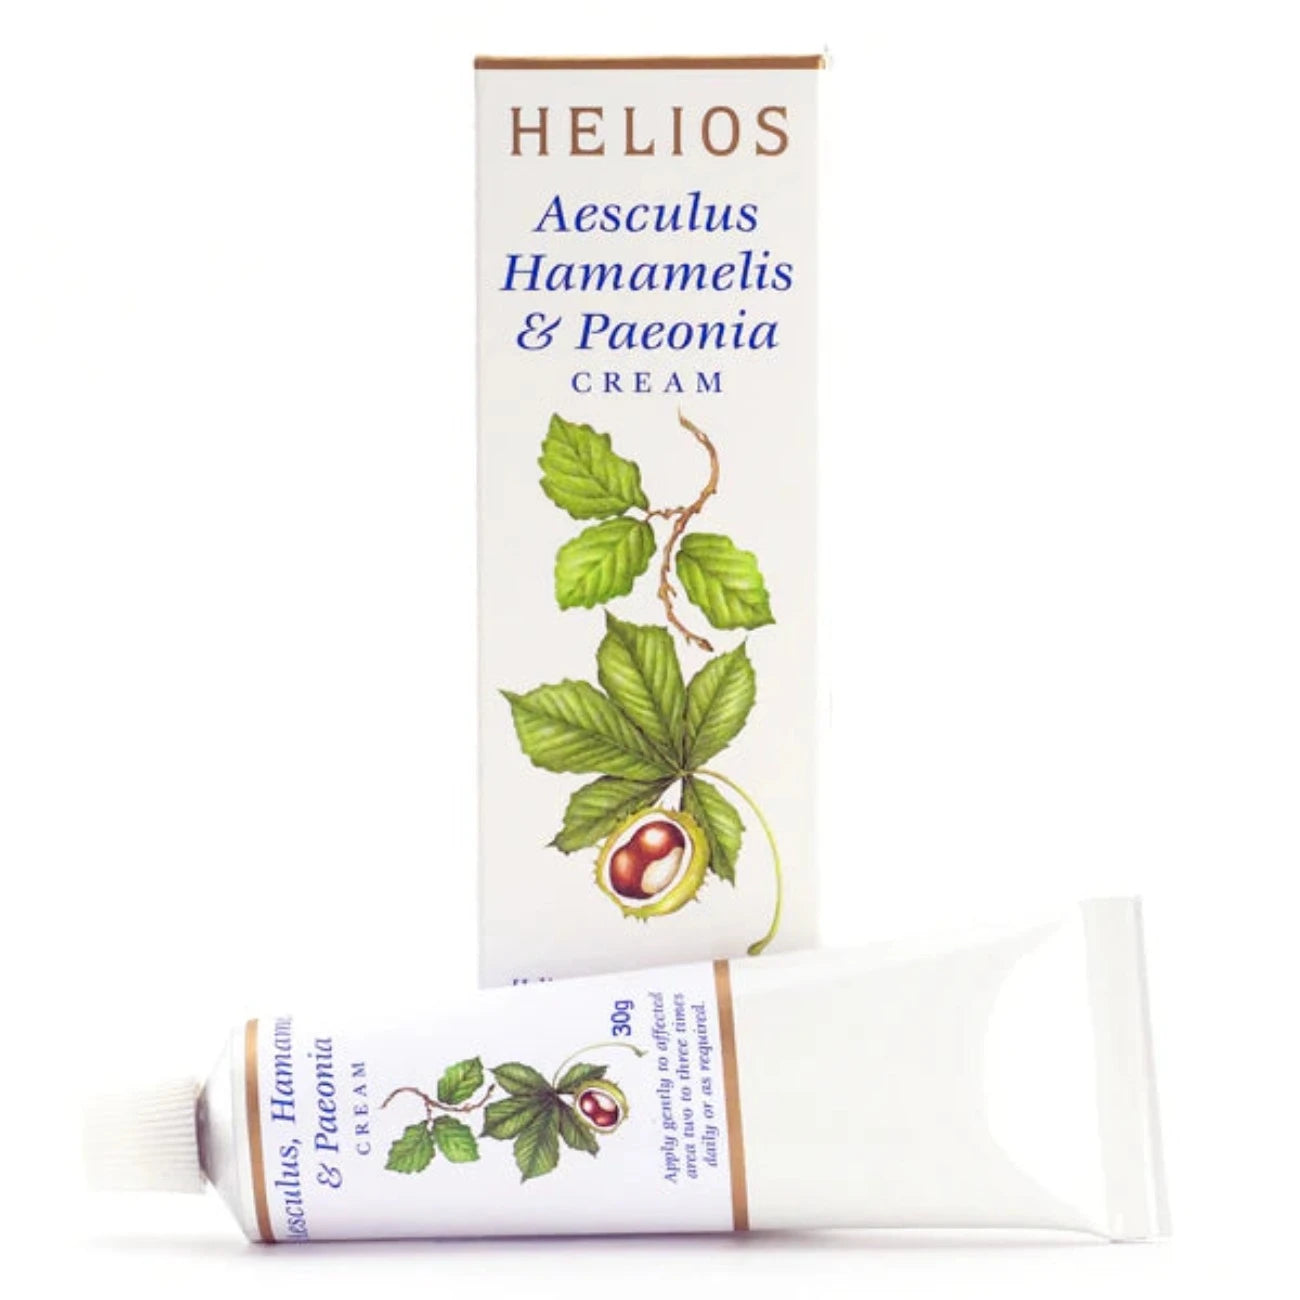 Aesculus Hamamelis and Paeonia Cream 30g